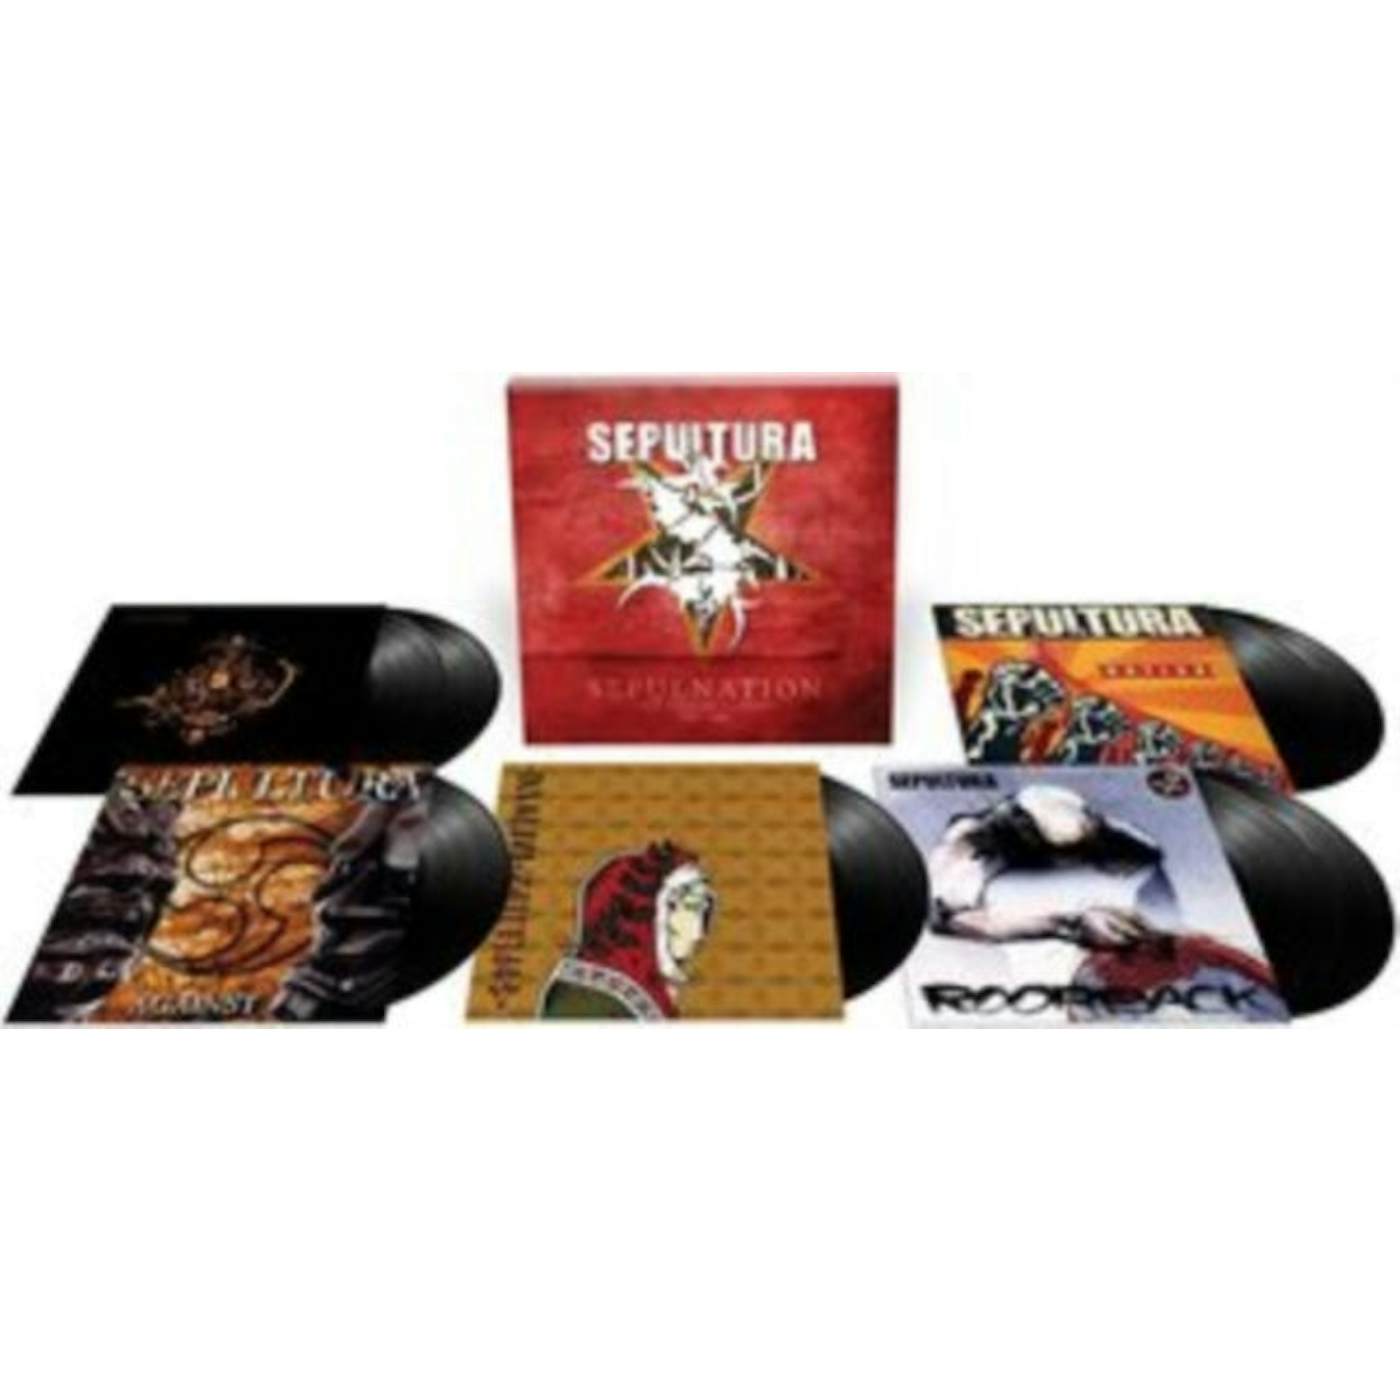 Sepultura LP Vinyl Record - Sepulnation - The Studio Albums 19 98-20. 09